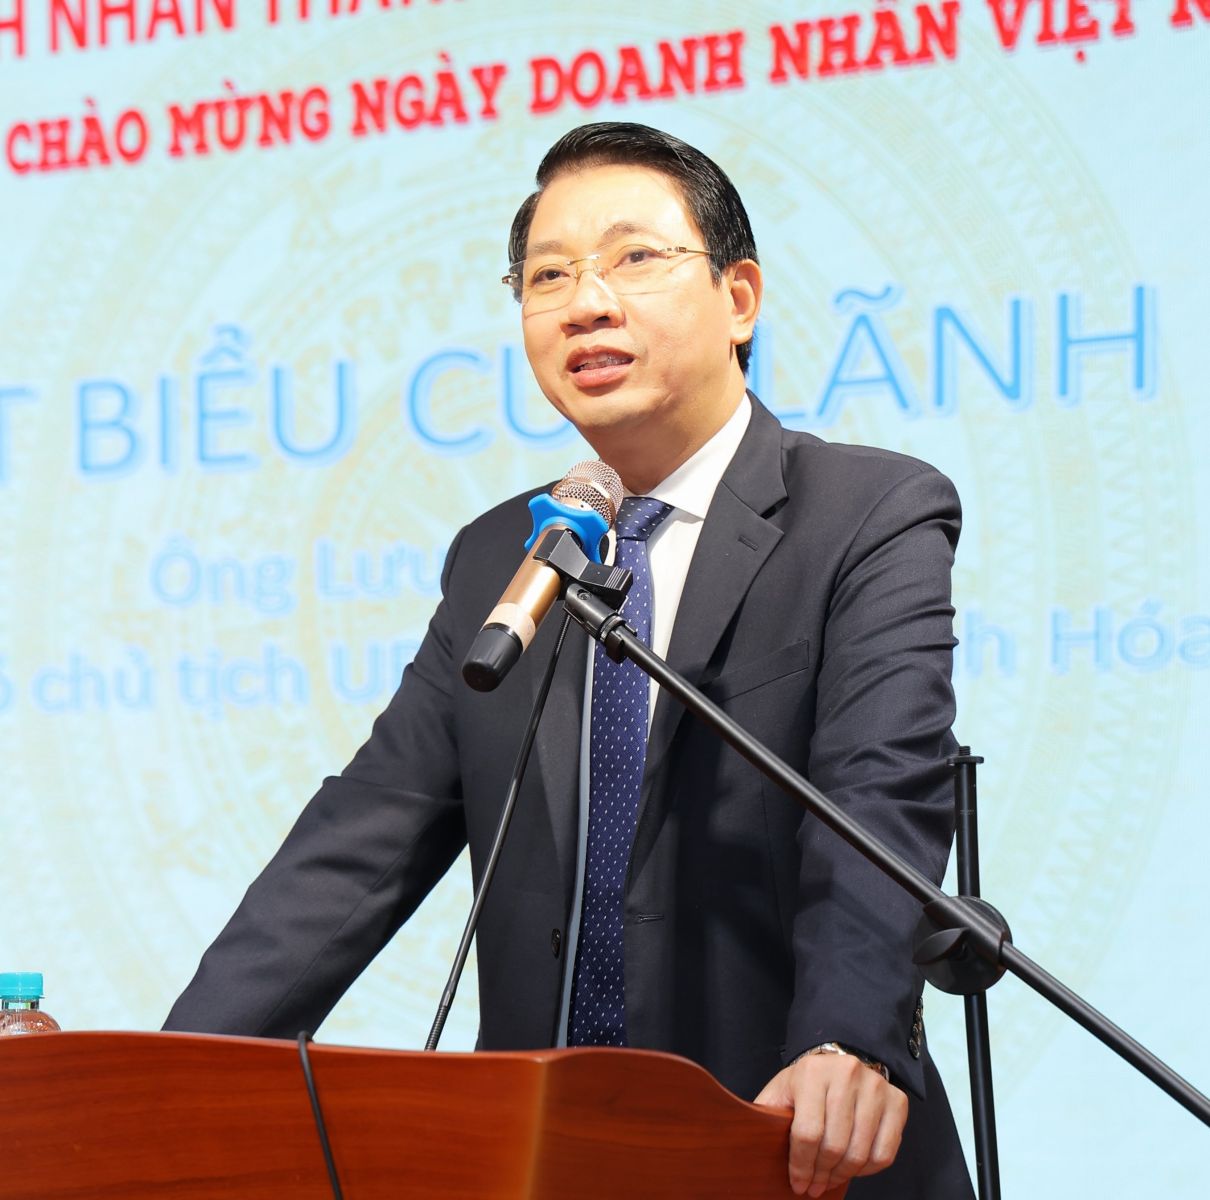 HTBC kỷ niệm Ngày Doanh nhân Việt Nam